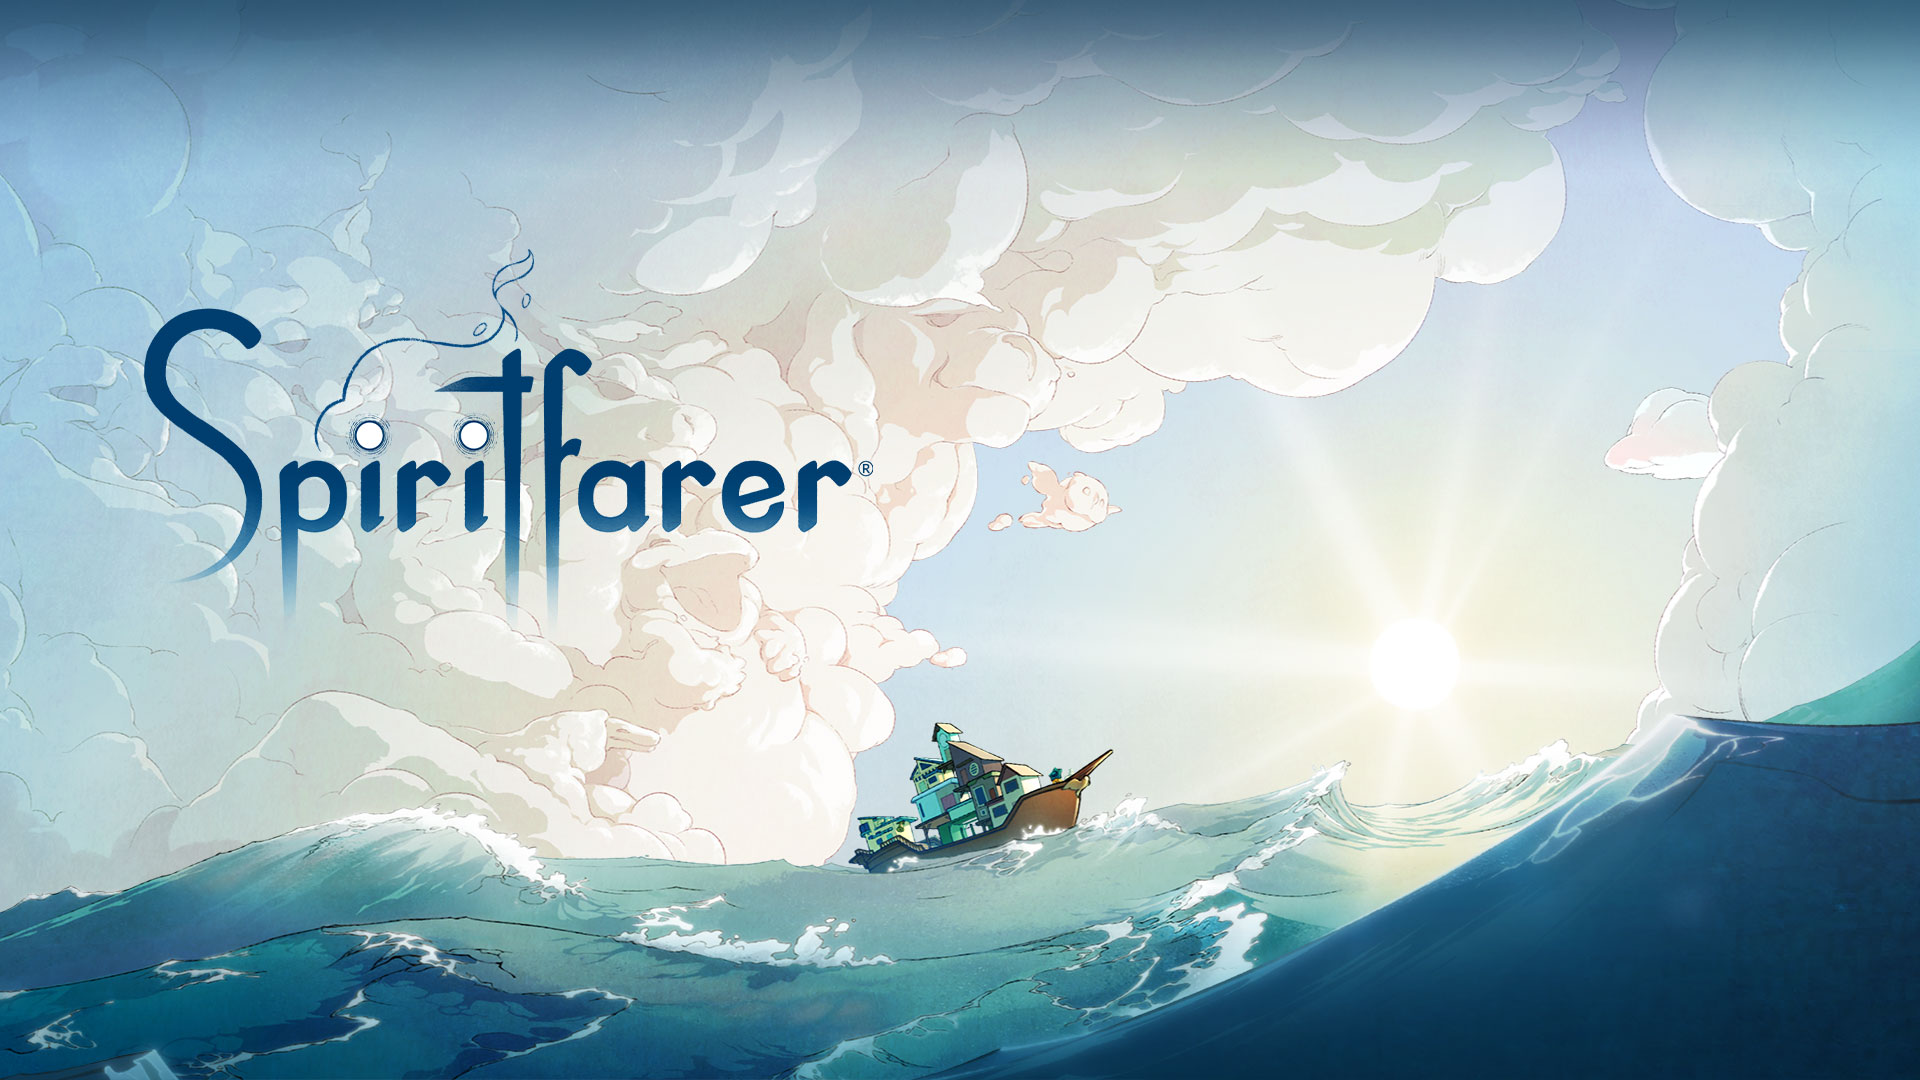 Logotipo da Spiritfarer, barco na água com nuvens que formam animais diferentes